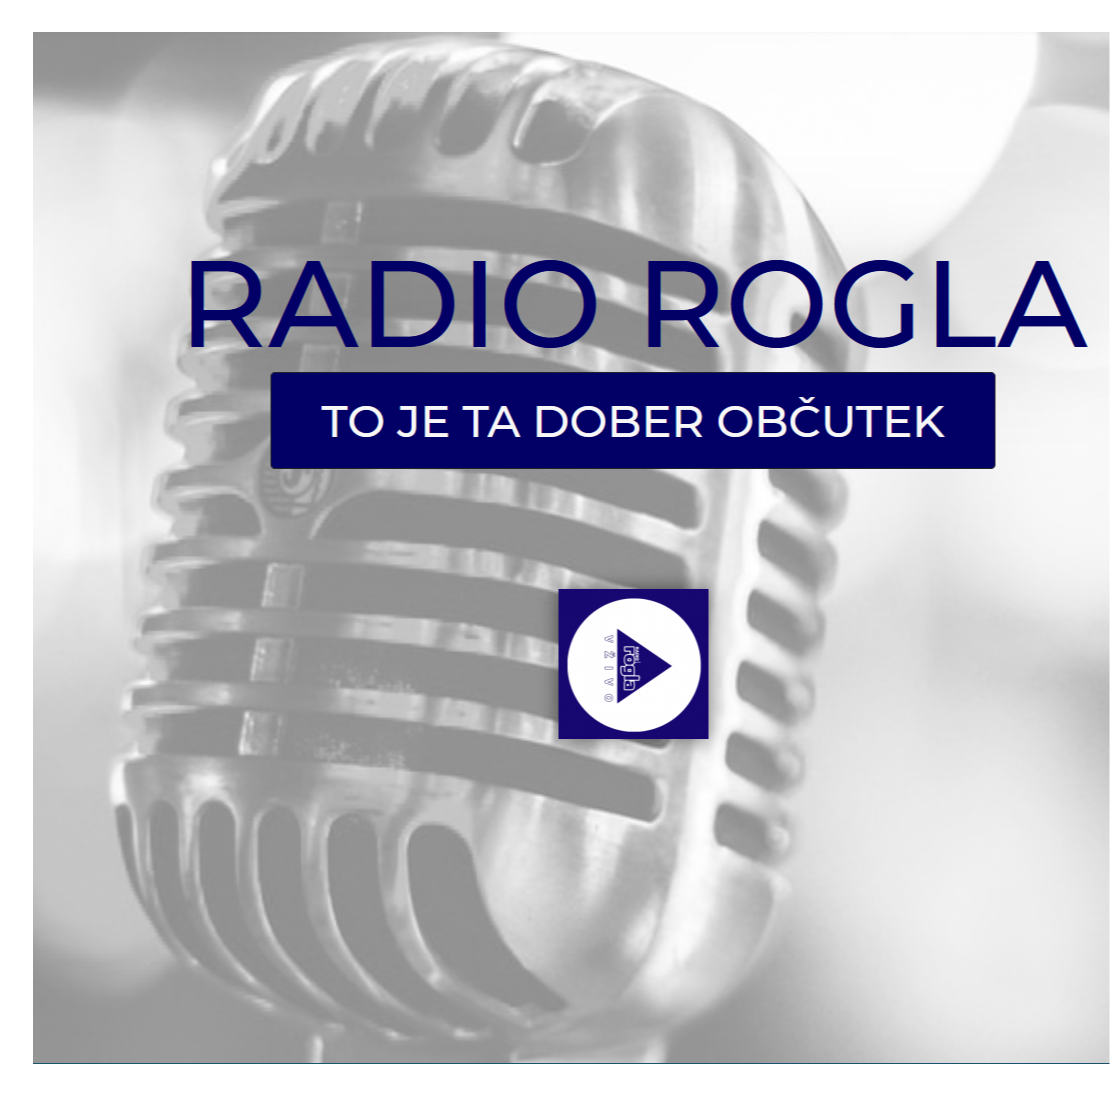 Radio Rogla - To je ta dober obcutek